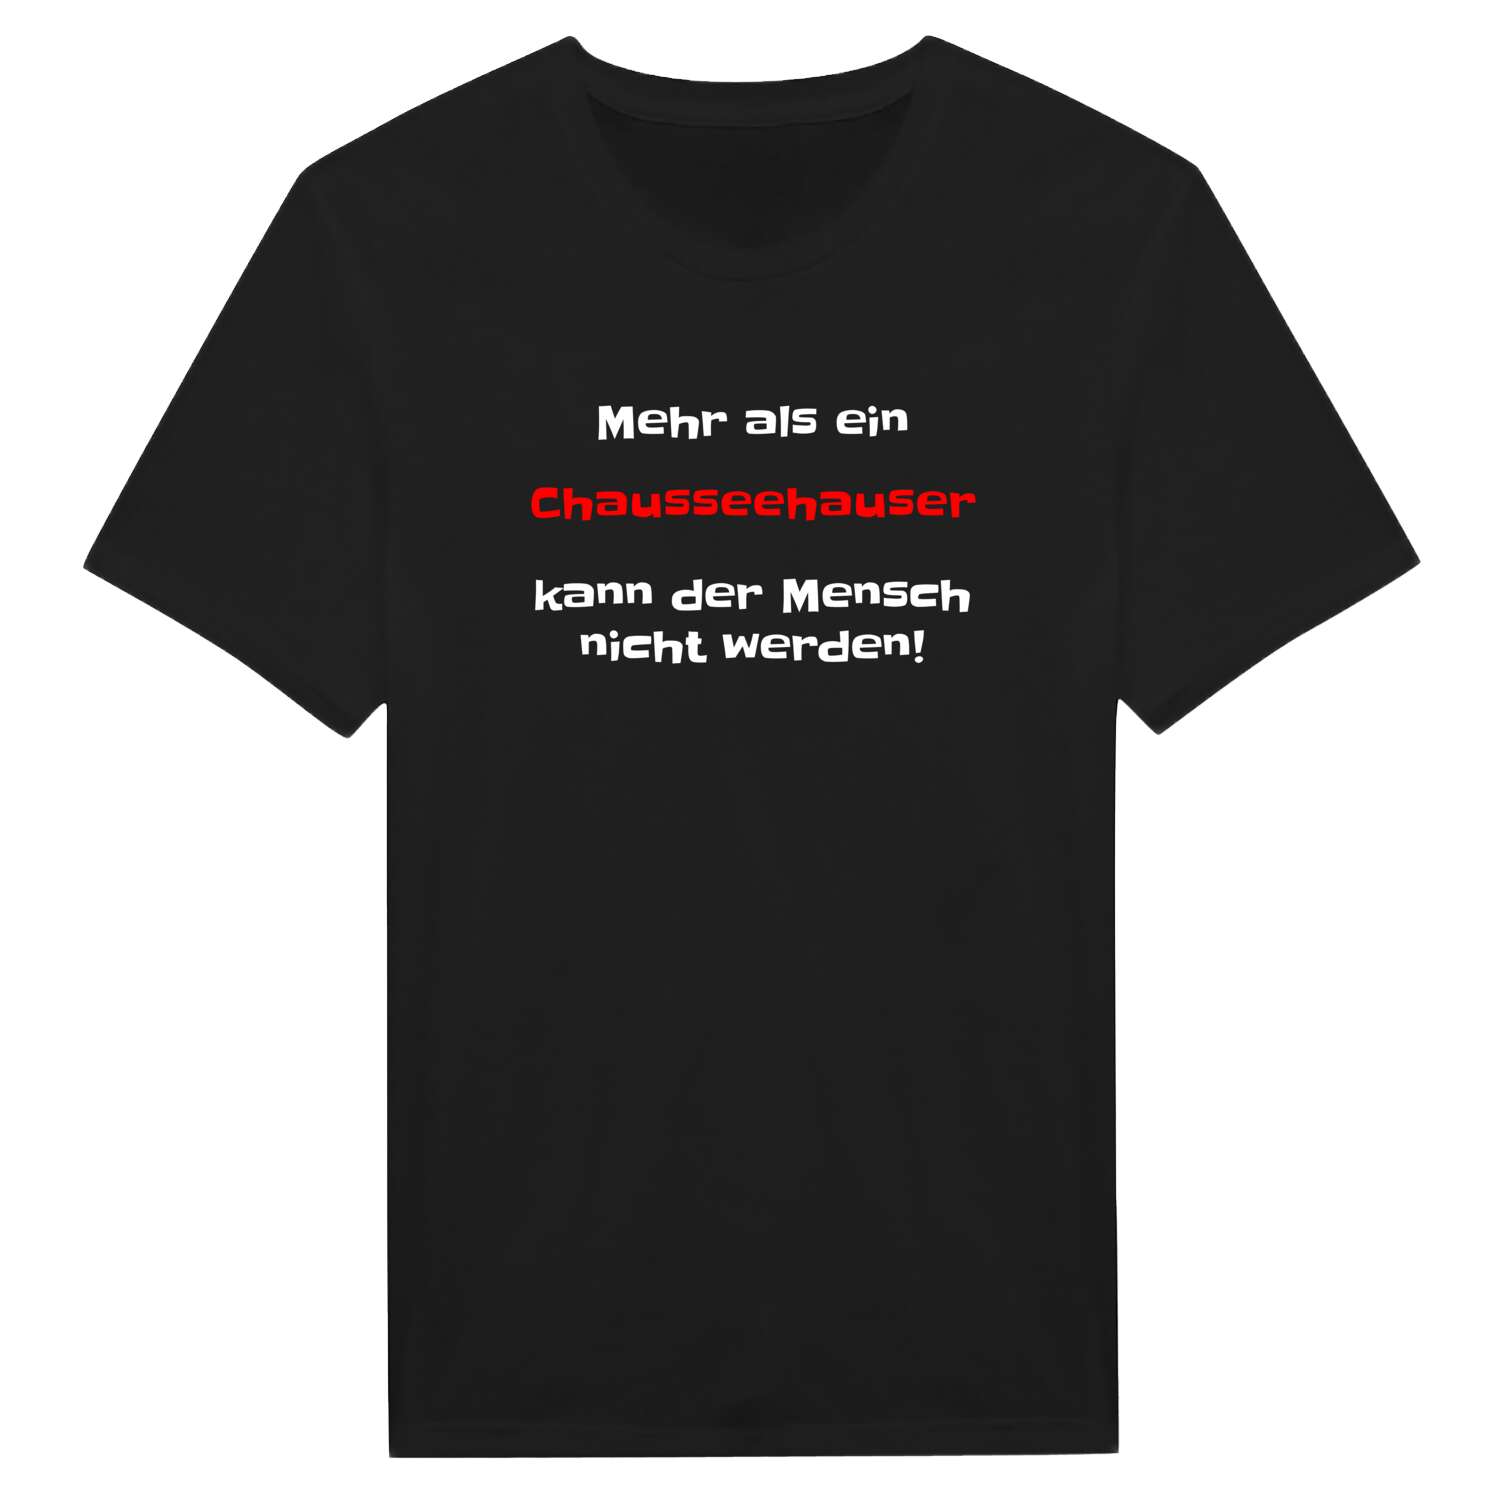 Chausseehaus T-Shirt »Mehr als ein«